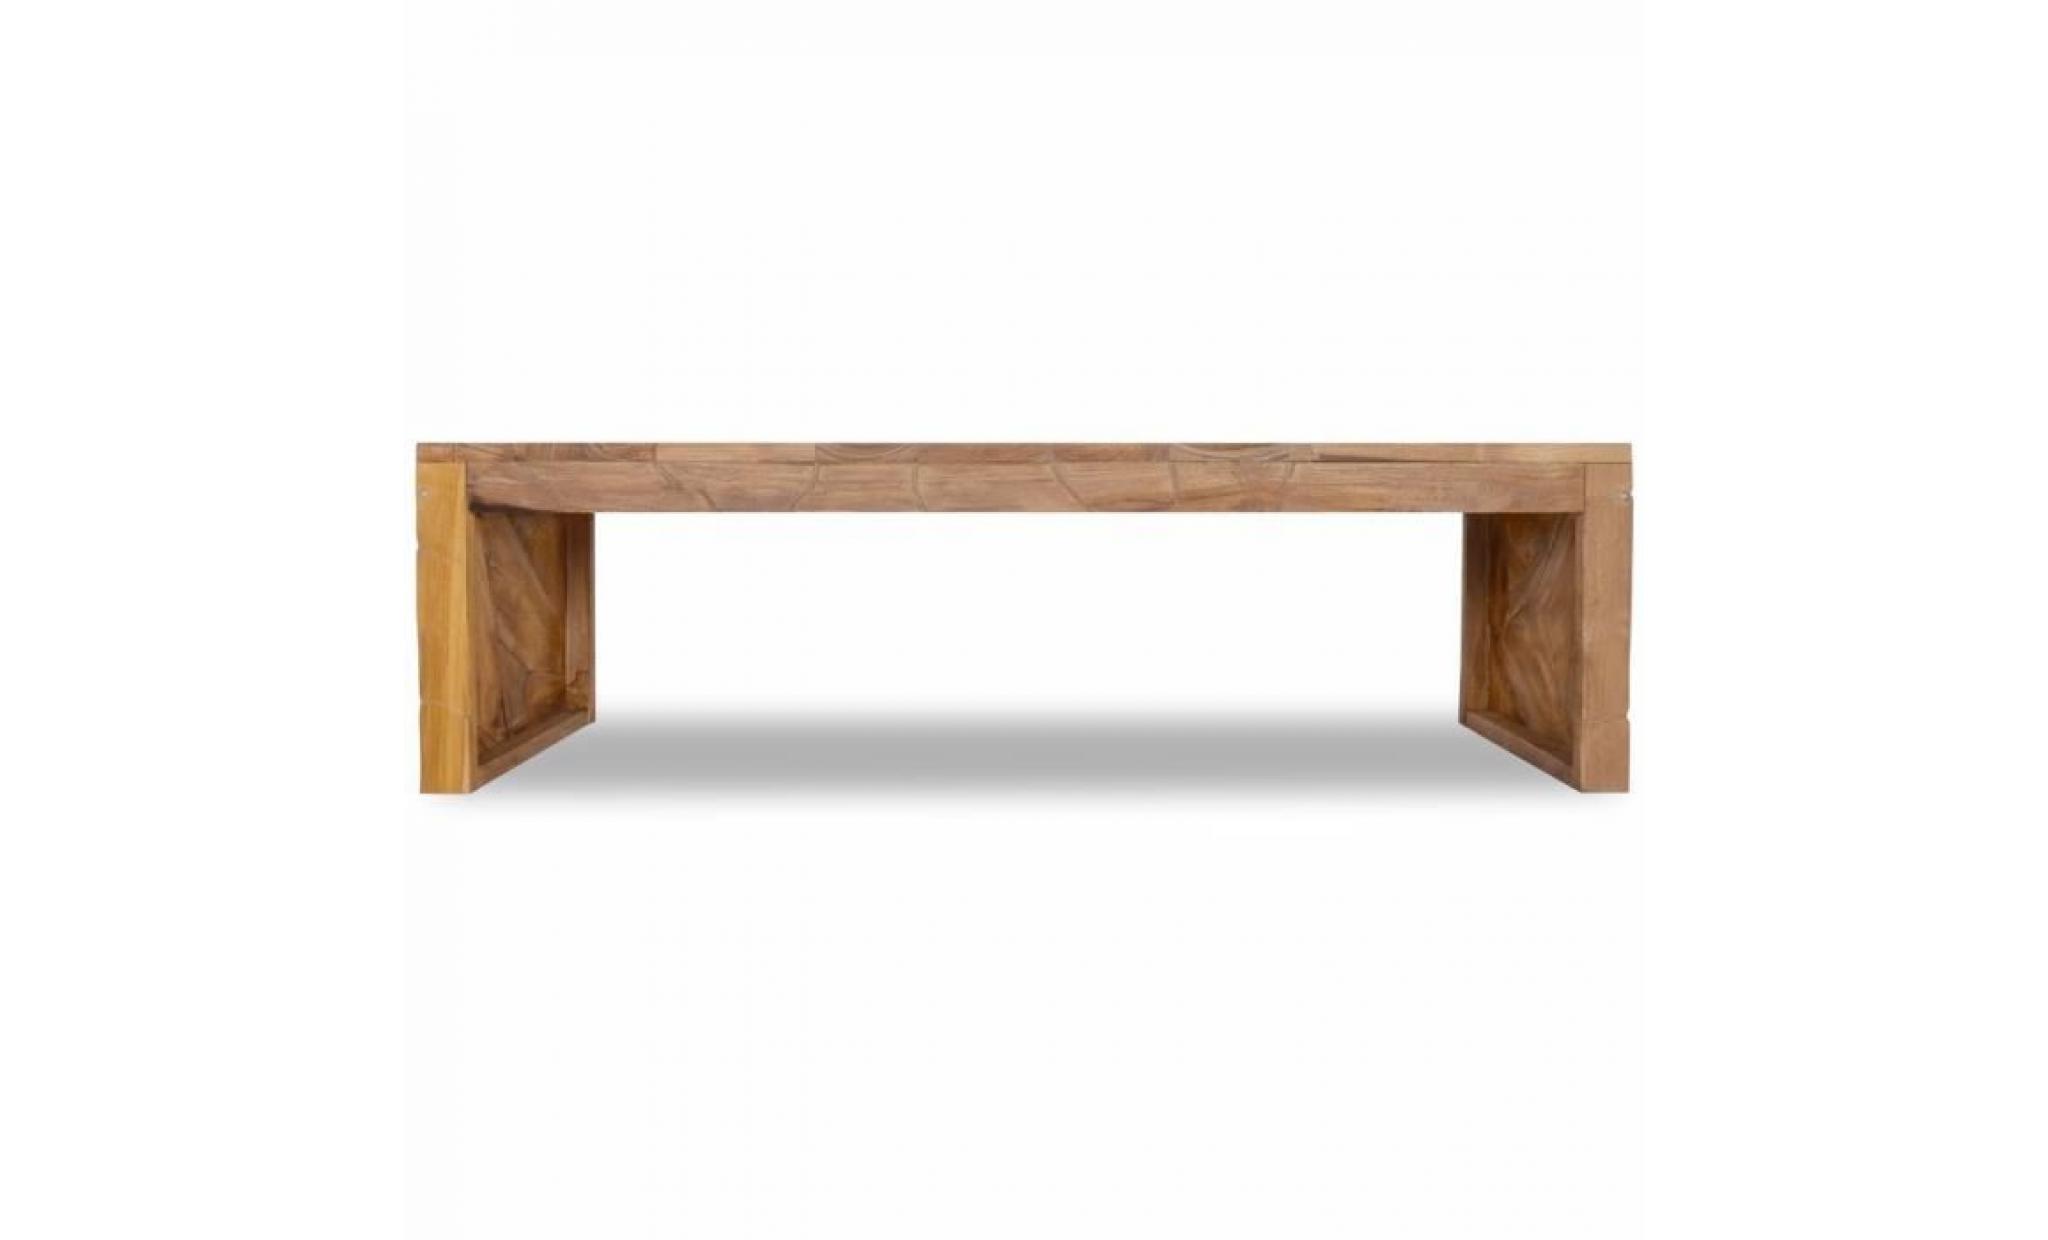 r188 ce meuble tv distinctif se compose de morceaux de bois dur en teck qui ont ete combines et montrent la forme et la